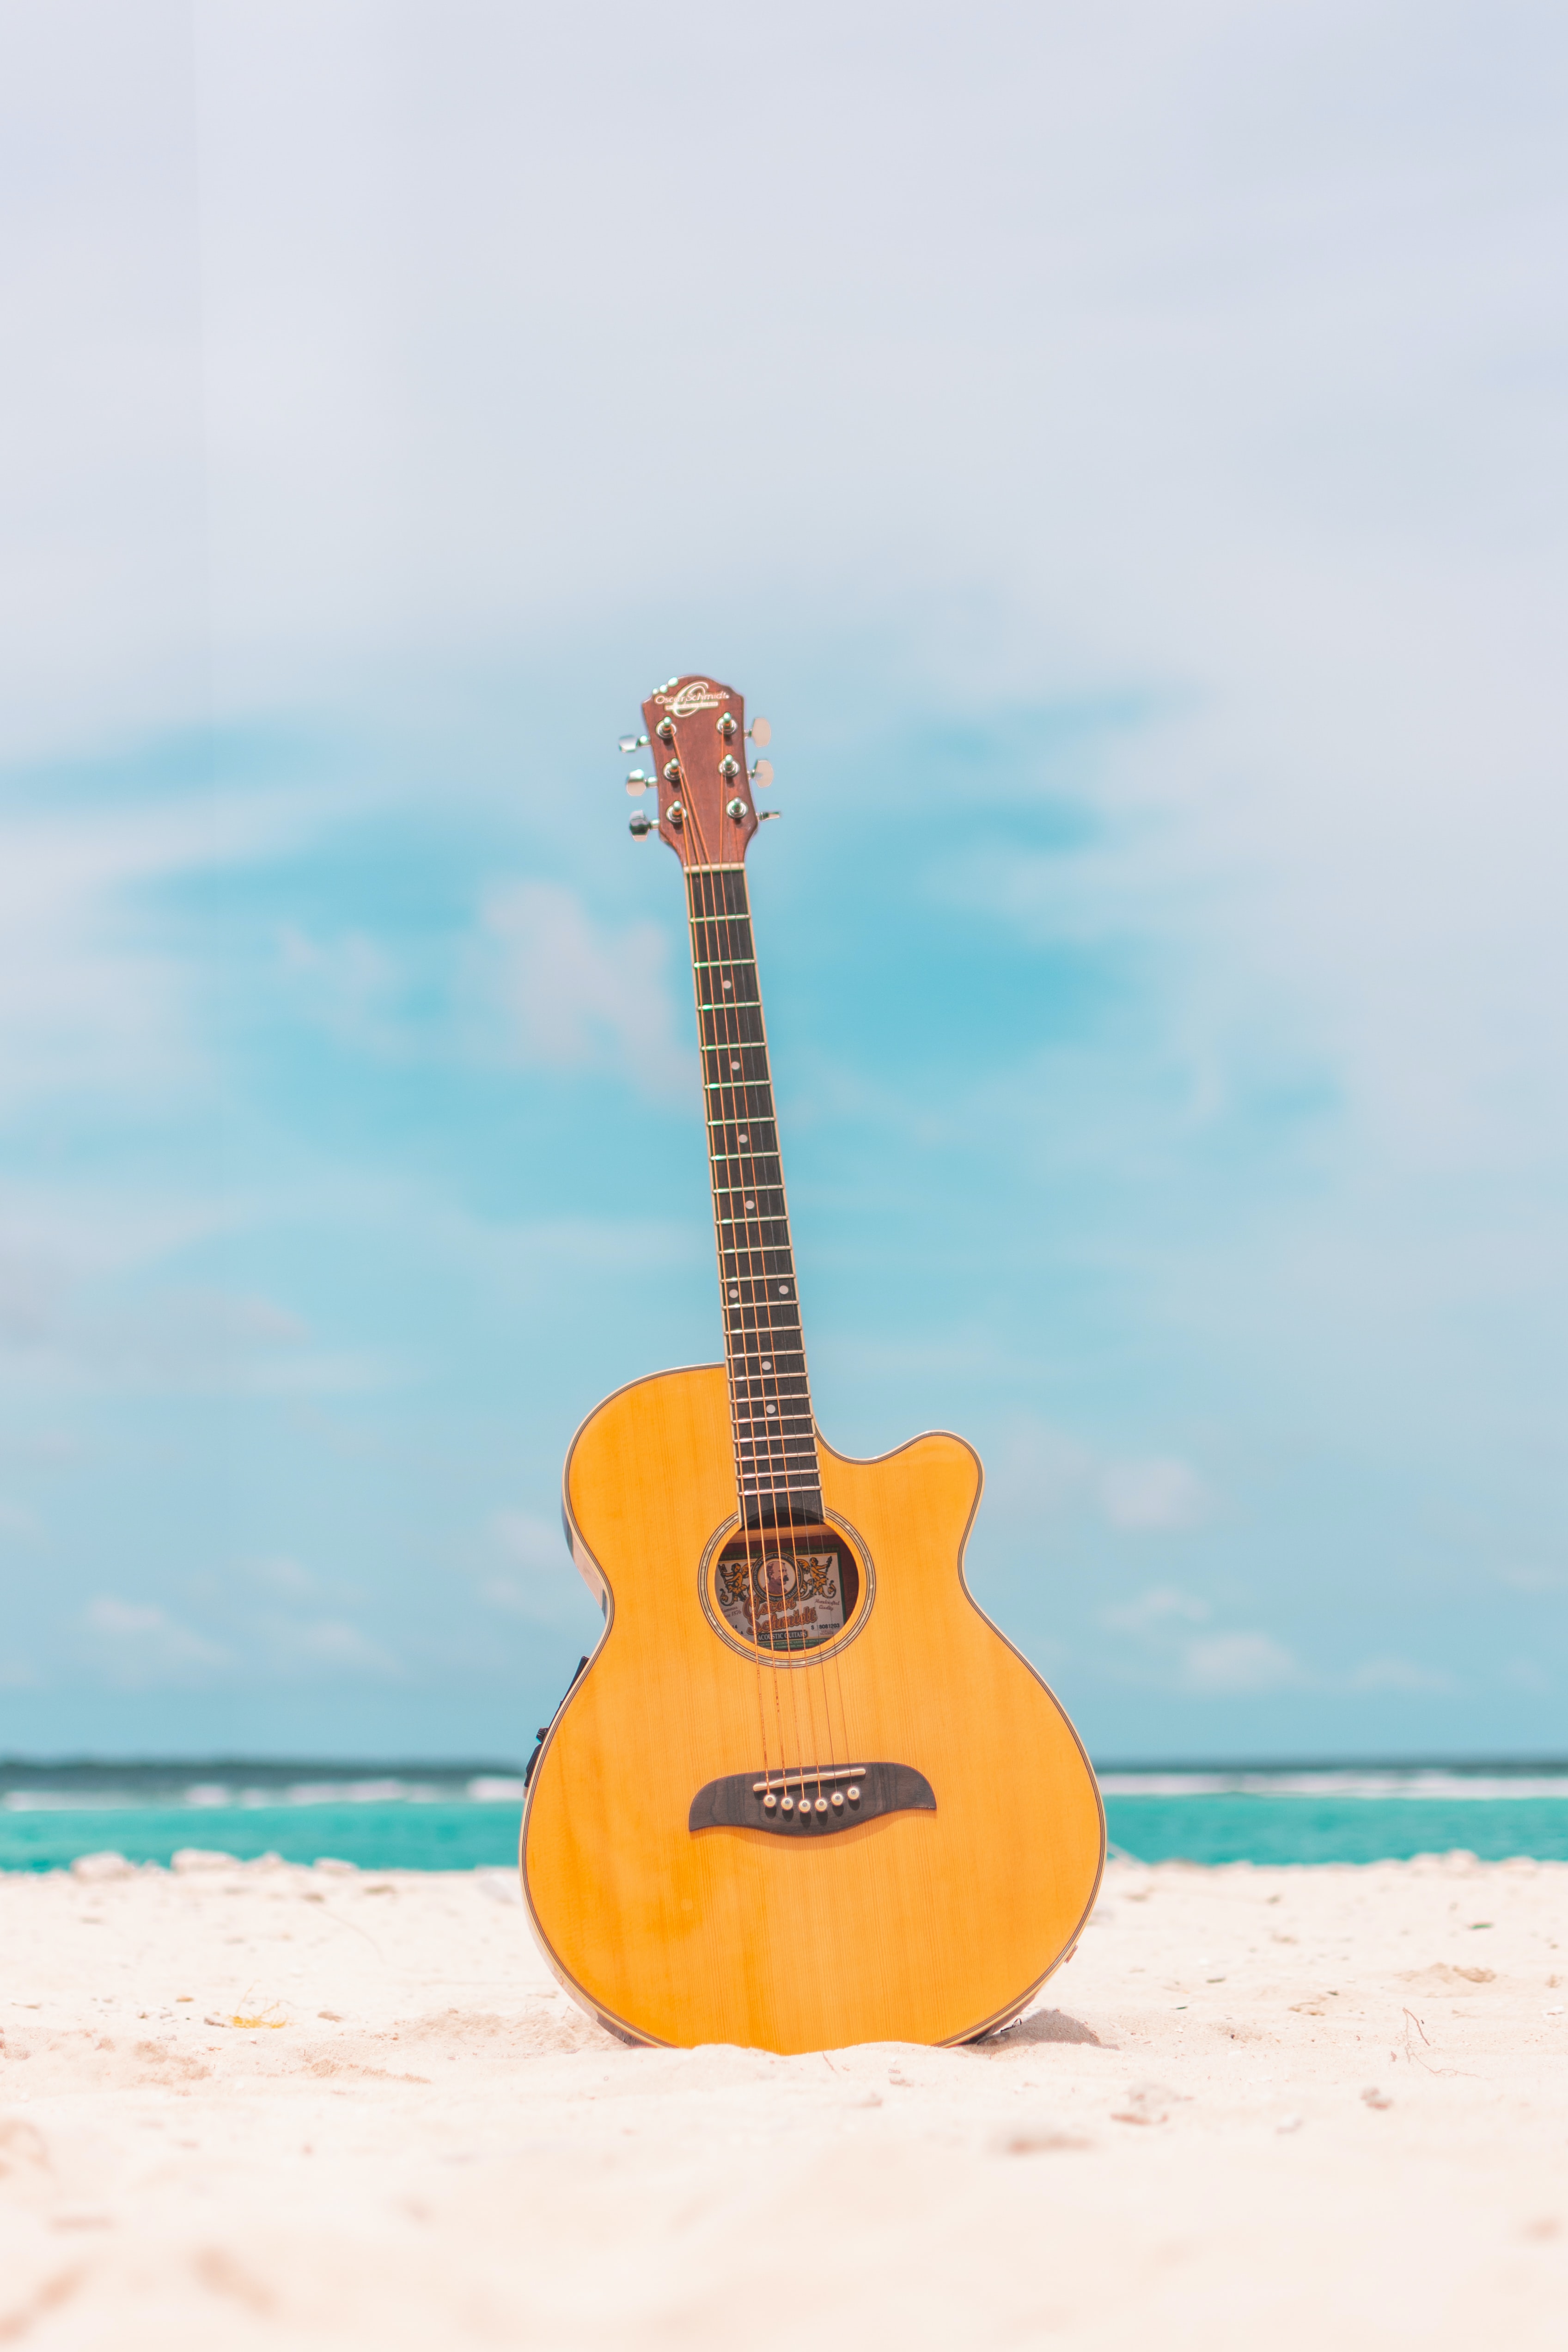 Free HD guitar, acoustic guitar, beach, music, summer, tool